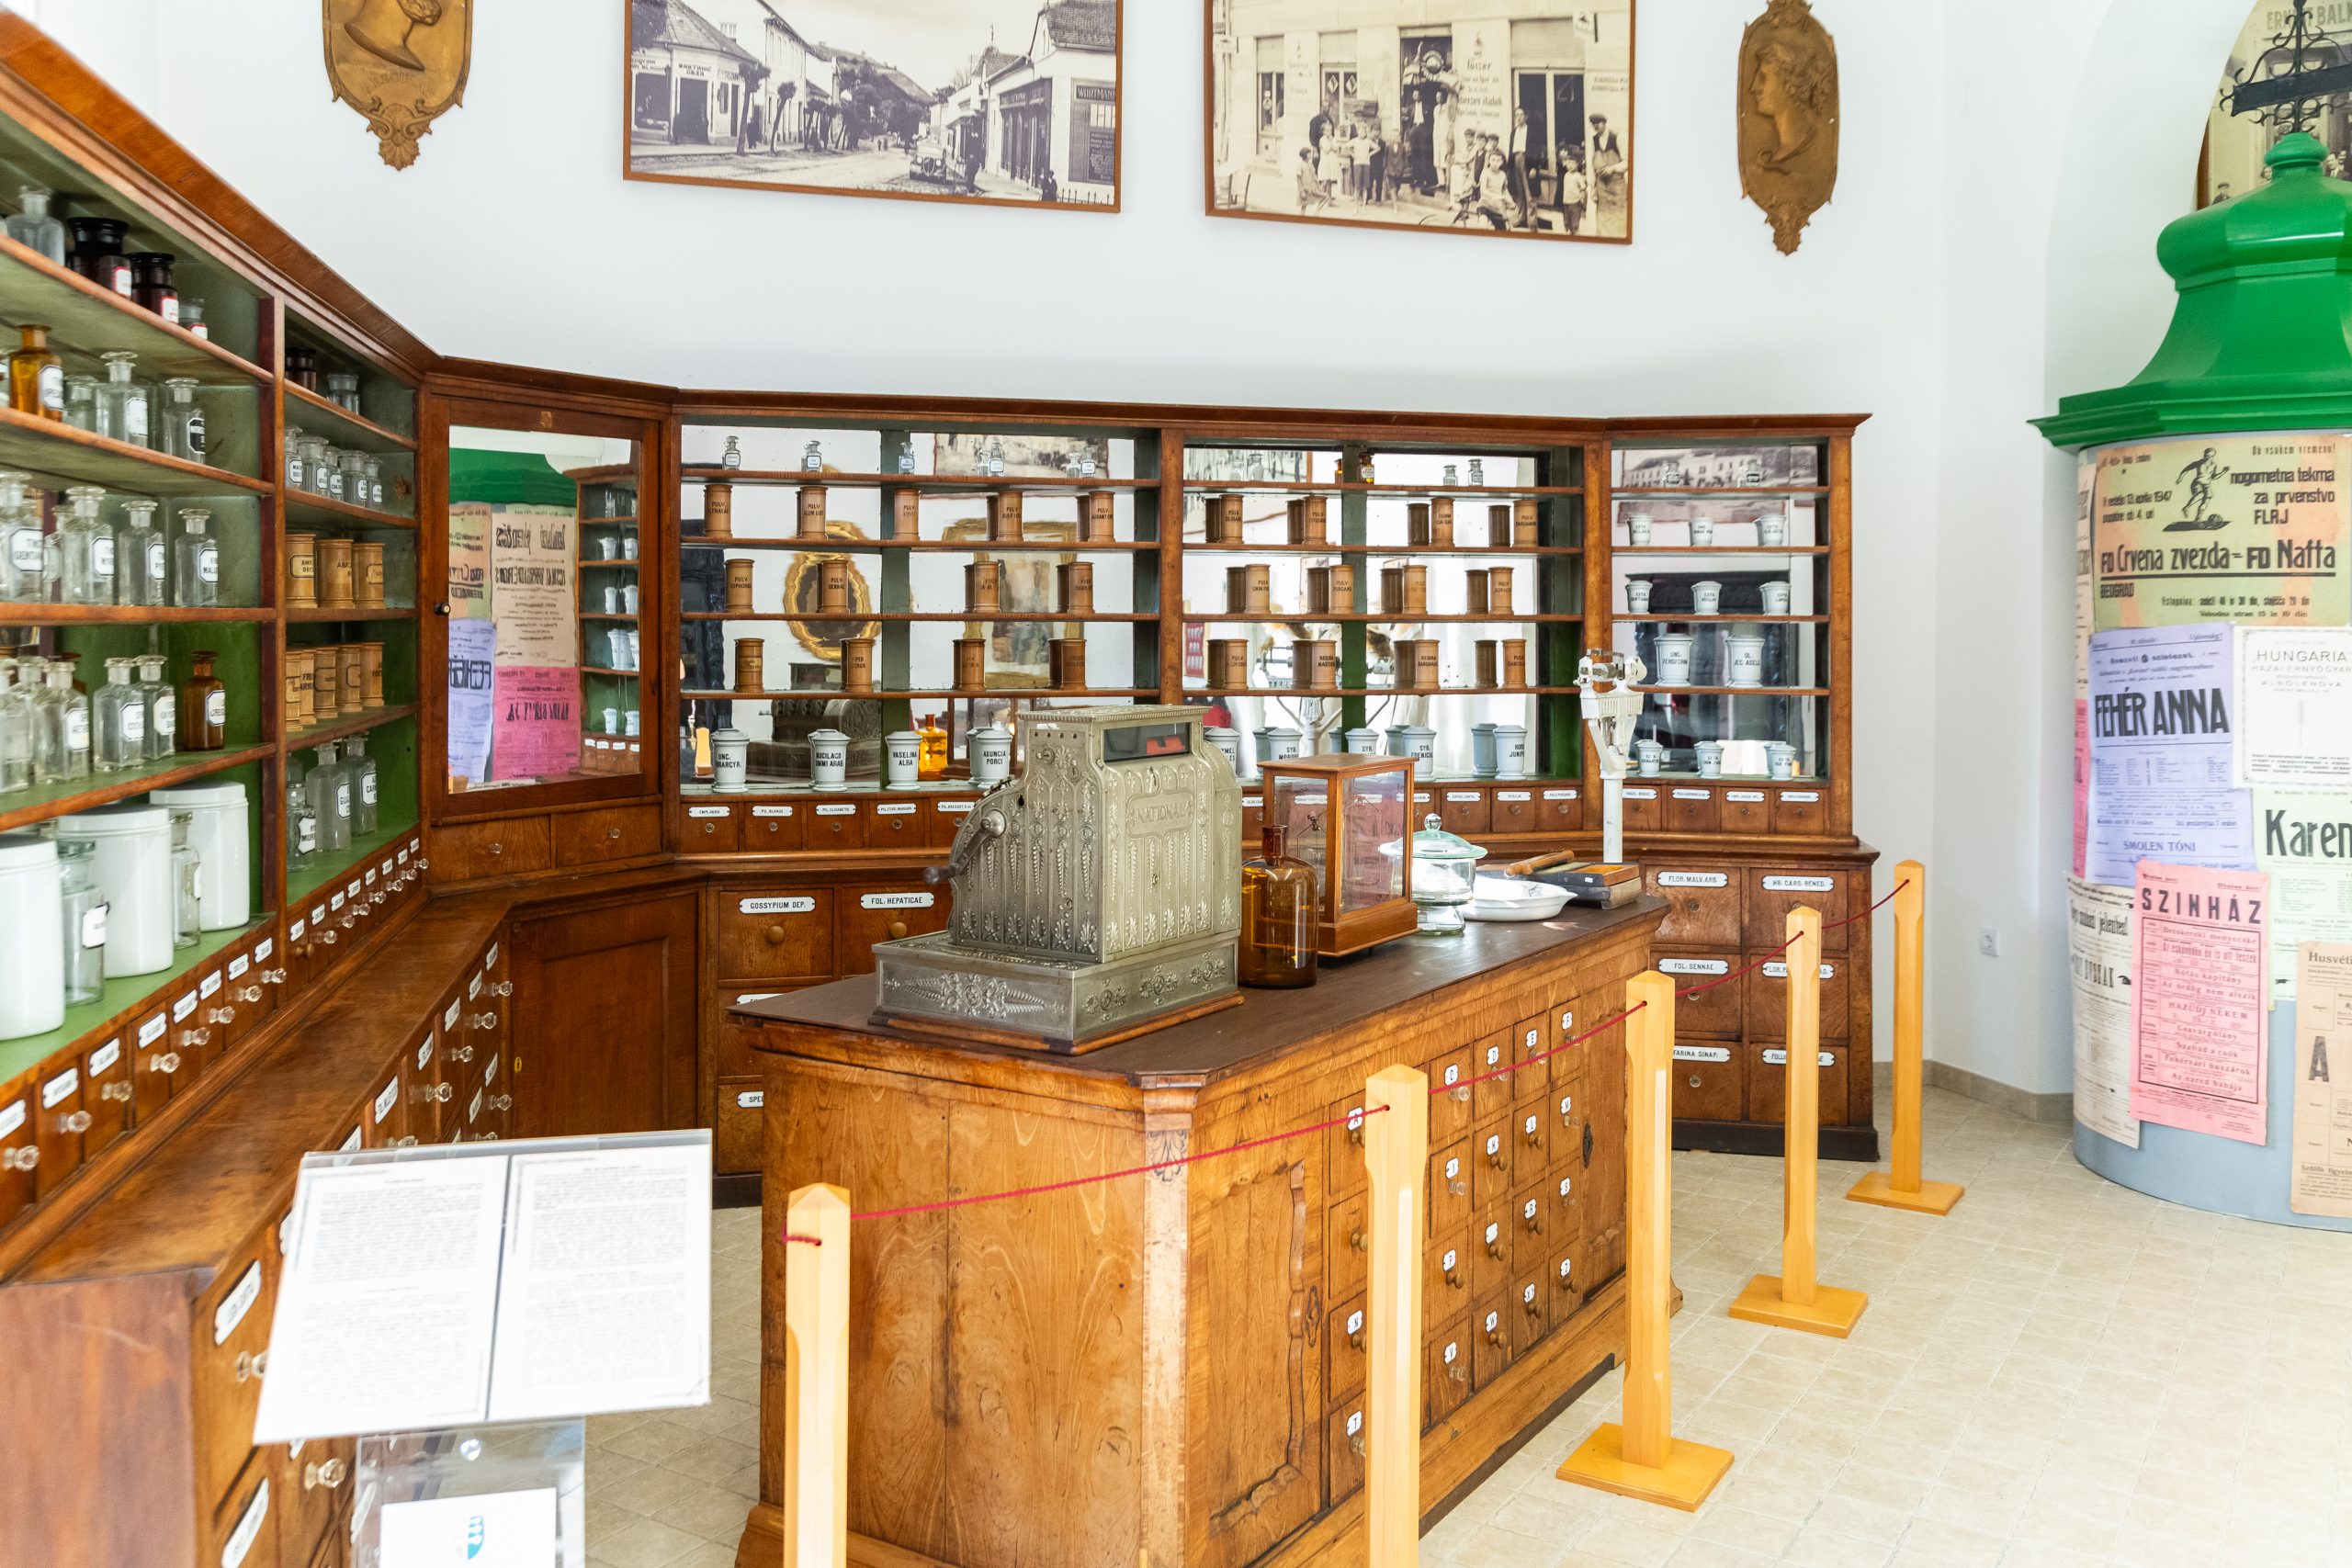 Muzej meščanstva, mjesto gdje se prošlost oživljava i u kojem upoznajemo civilizacijske prekretnice tiskarstva i kišobranarstva.